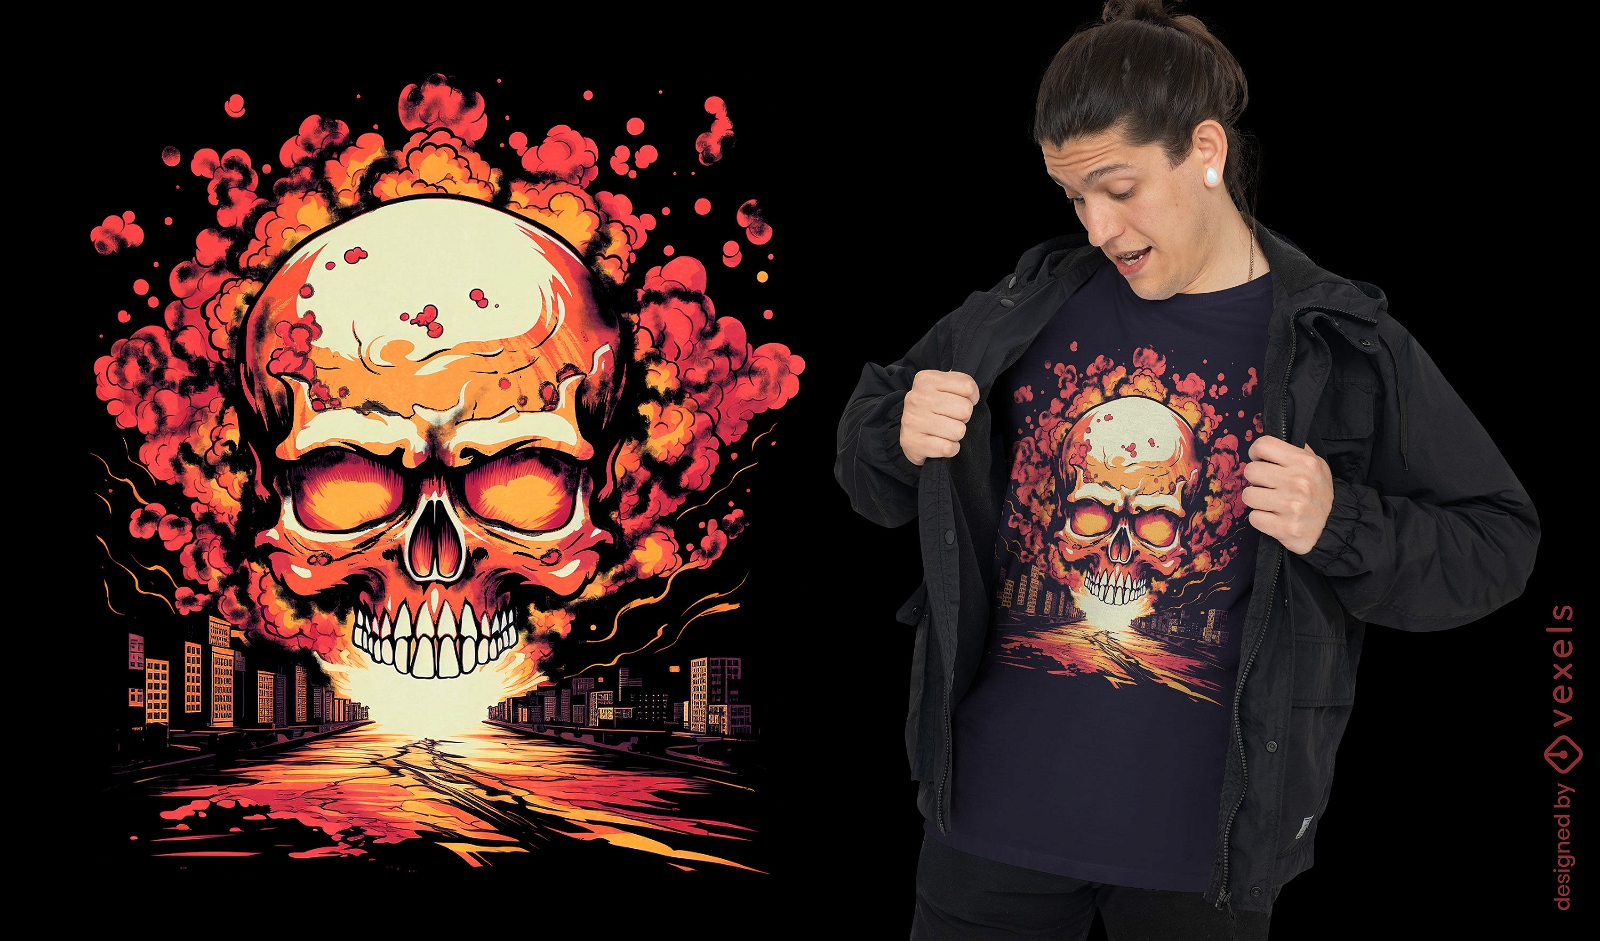 Skull death explosion t-shirt design